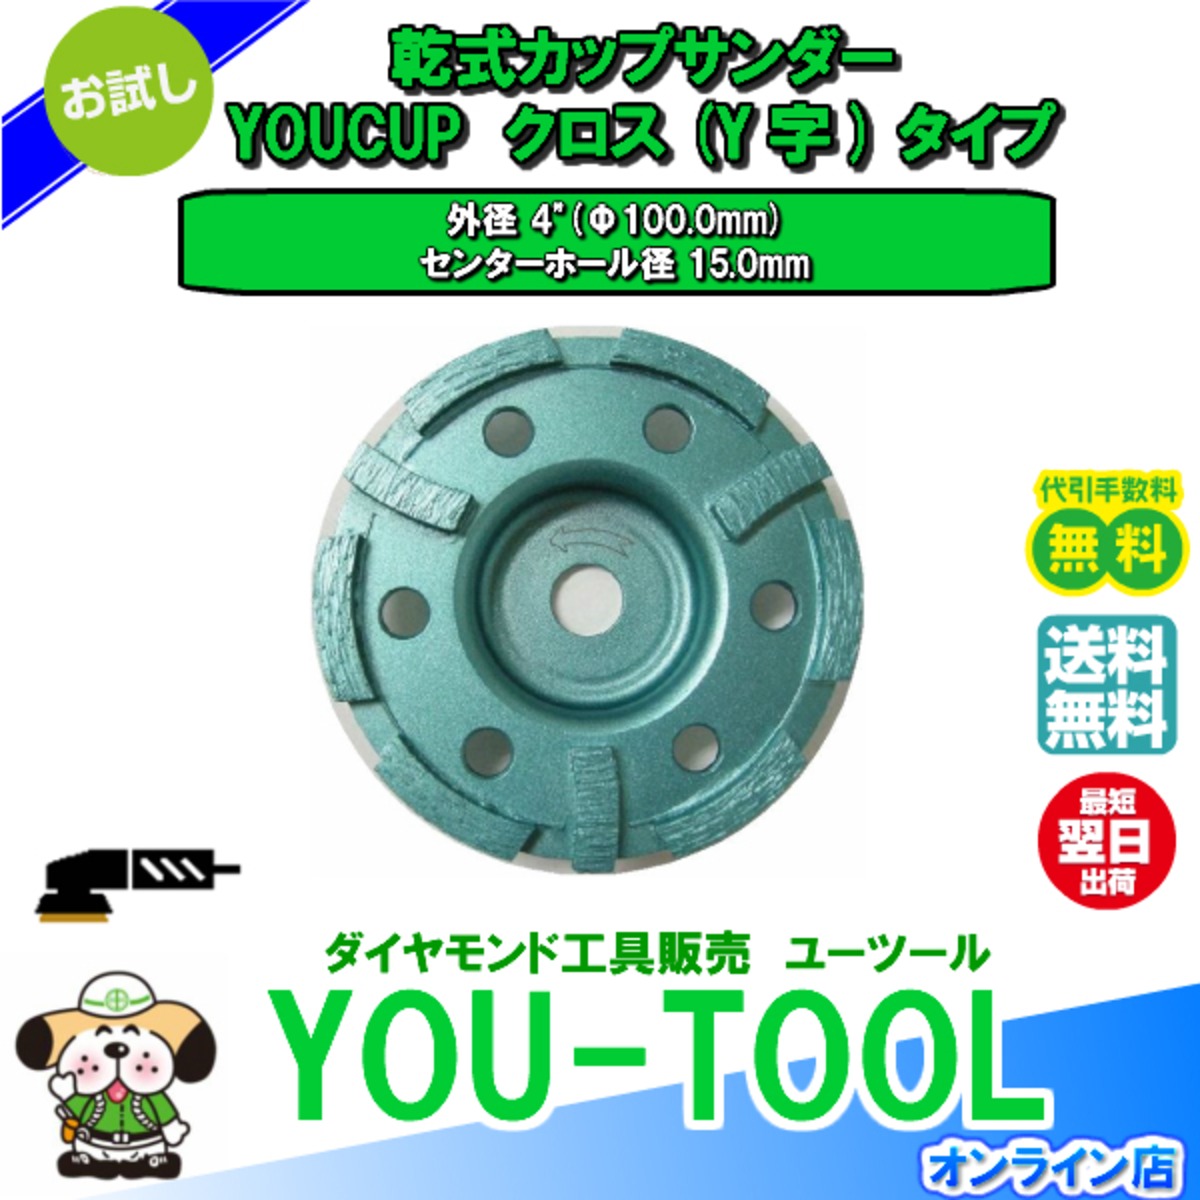 ダイヤモンドカップサンダー F100 ｙ字 スタンダード You Tool Online